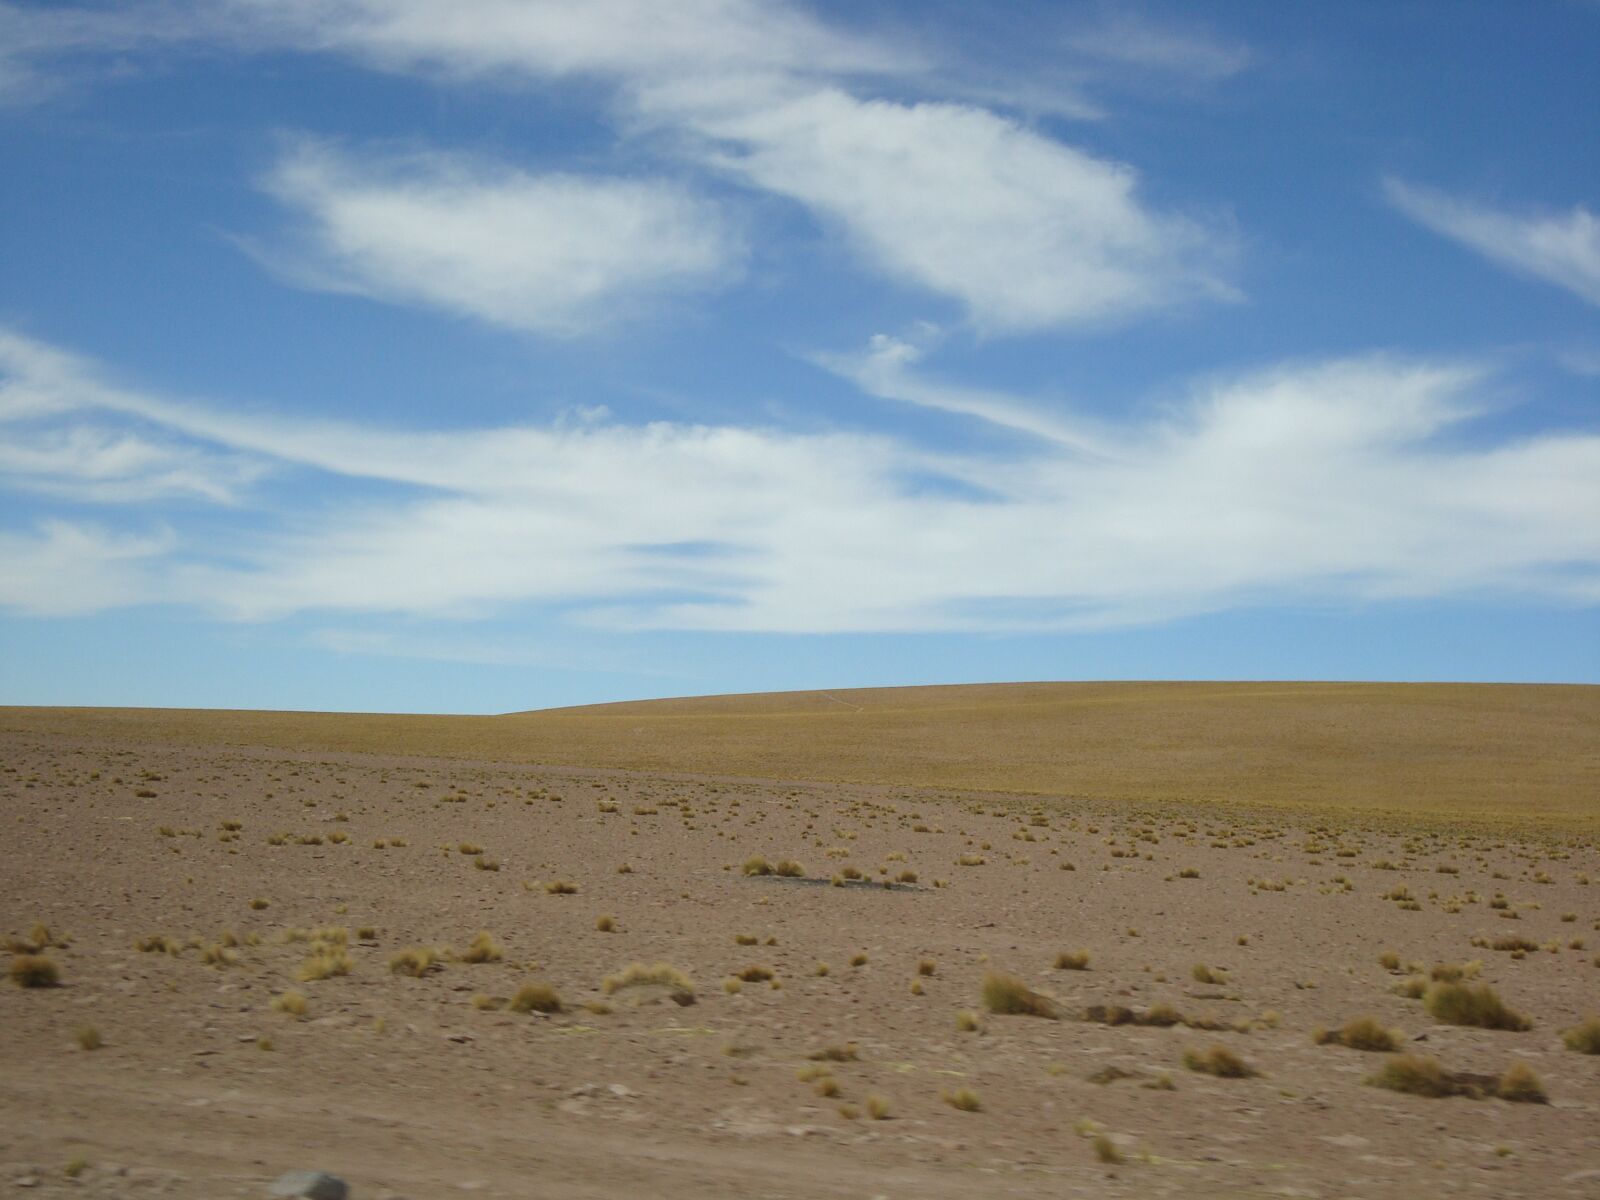 Sony Cyber-shot DSC-W120 sample photo. Landscape, desert, sky photography